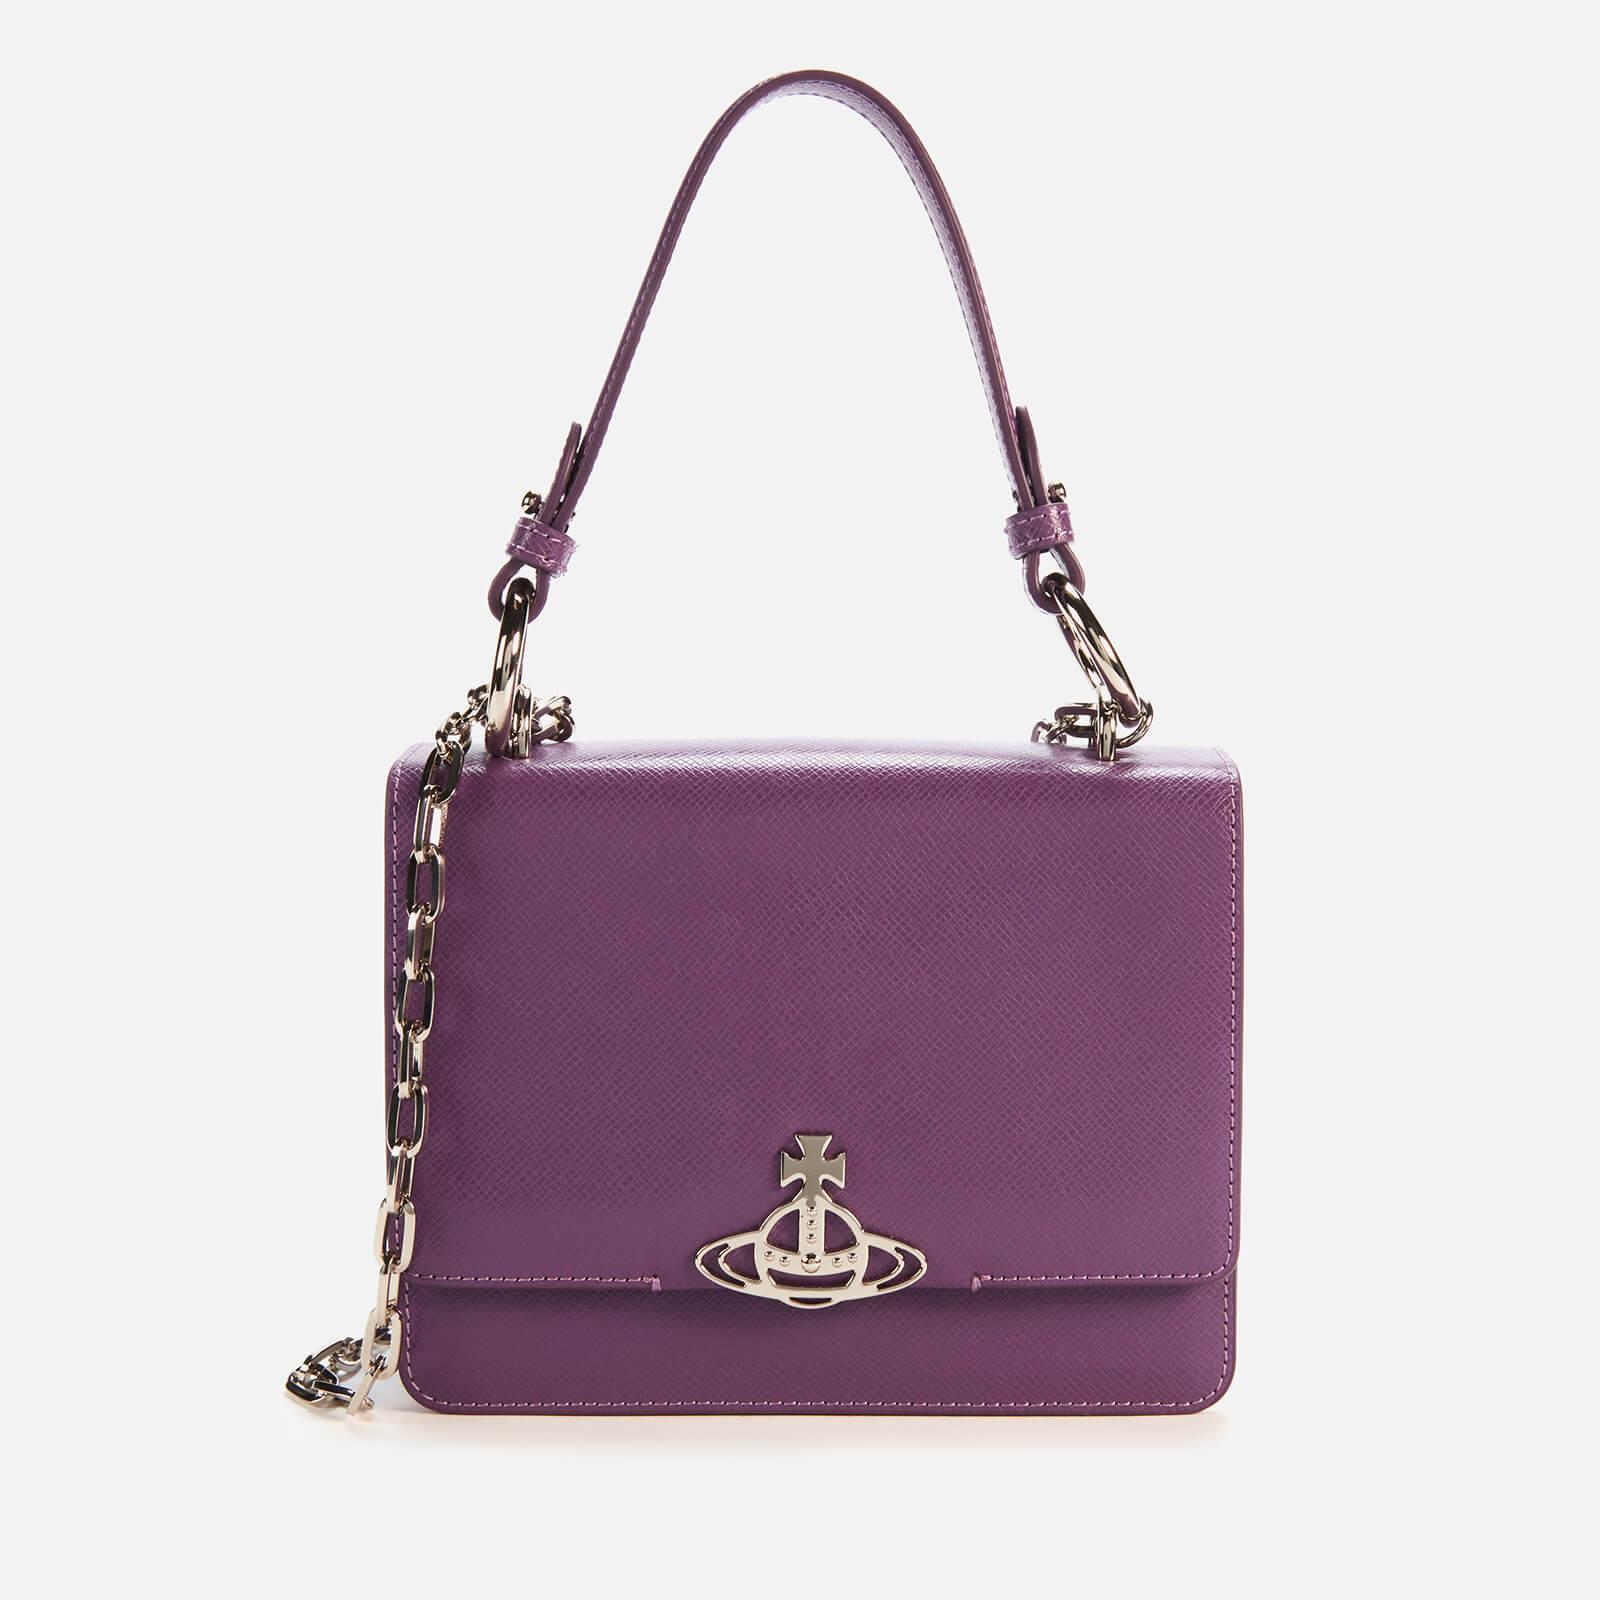 Vivienne Westwood Leather Debbie Medium Bag With Flap in Purple 